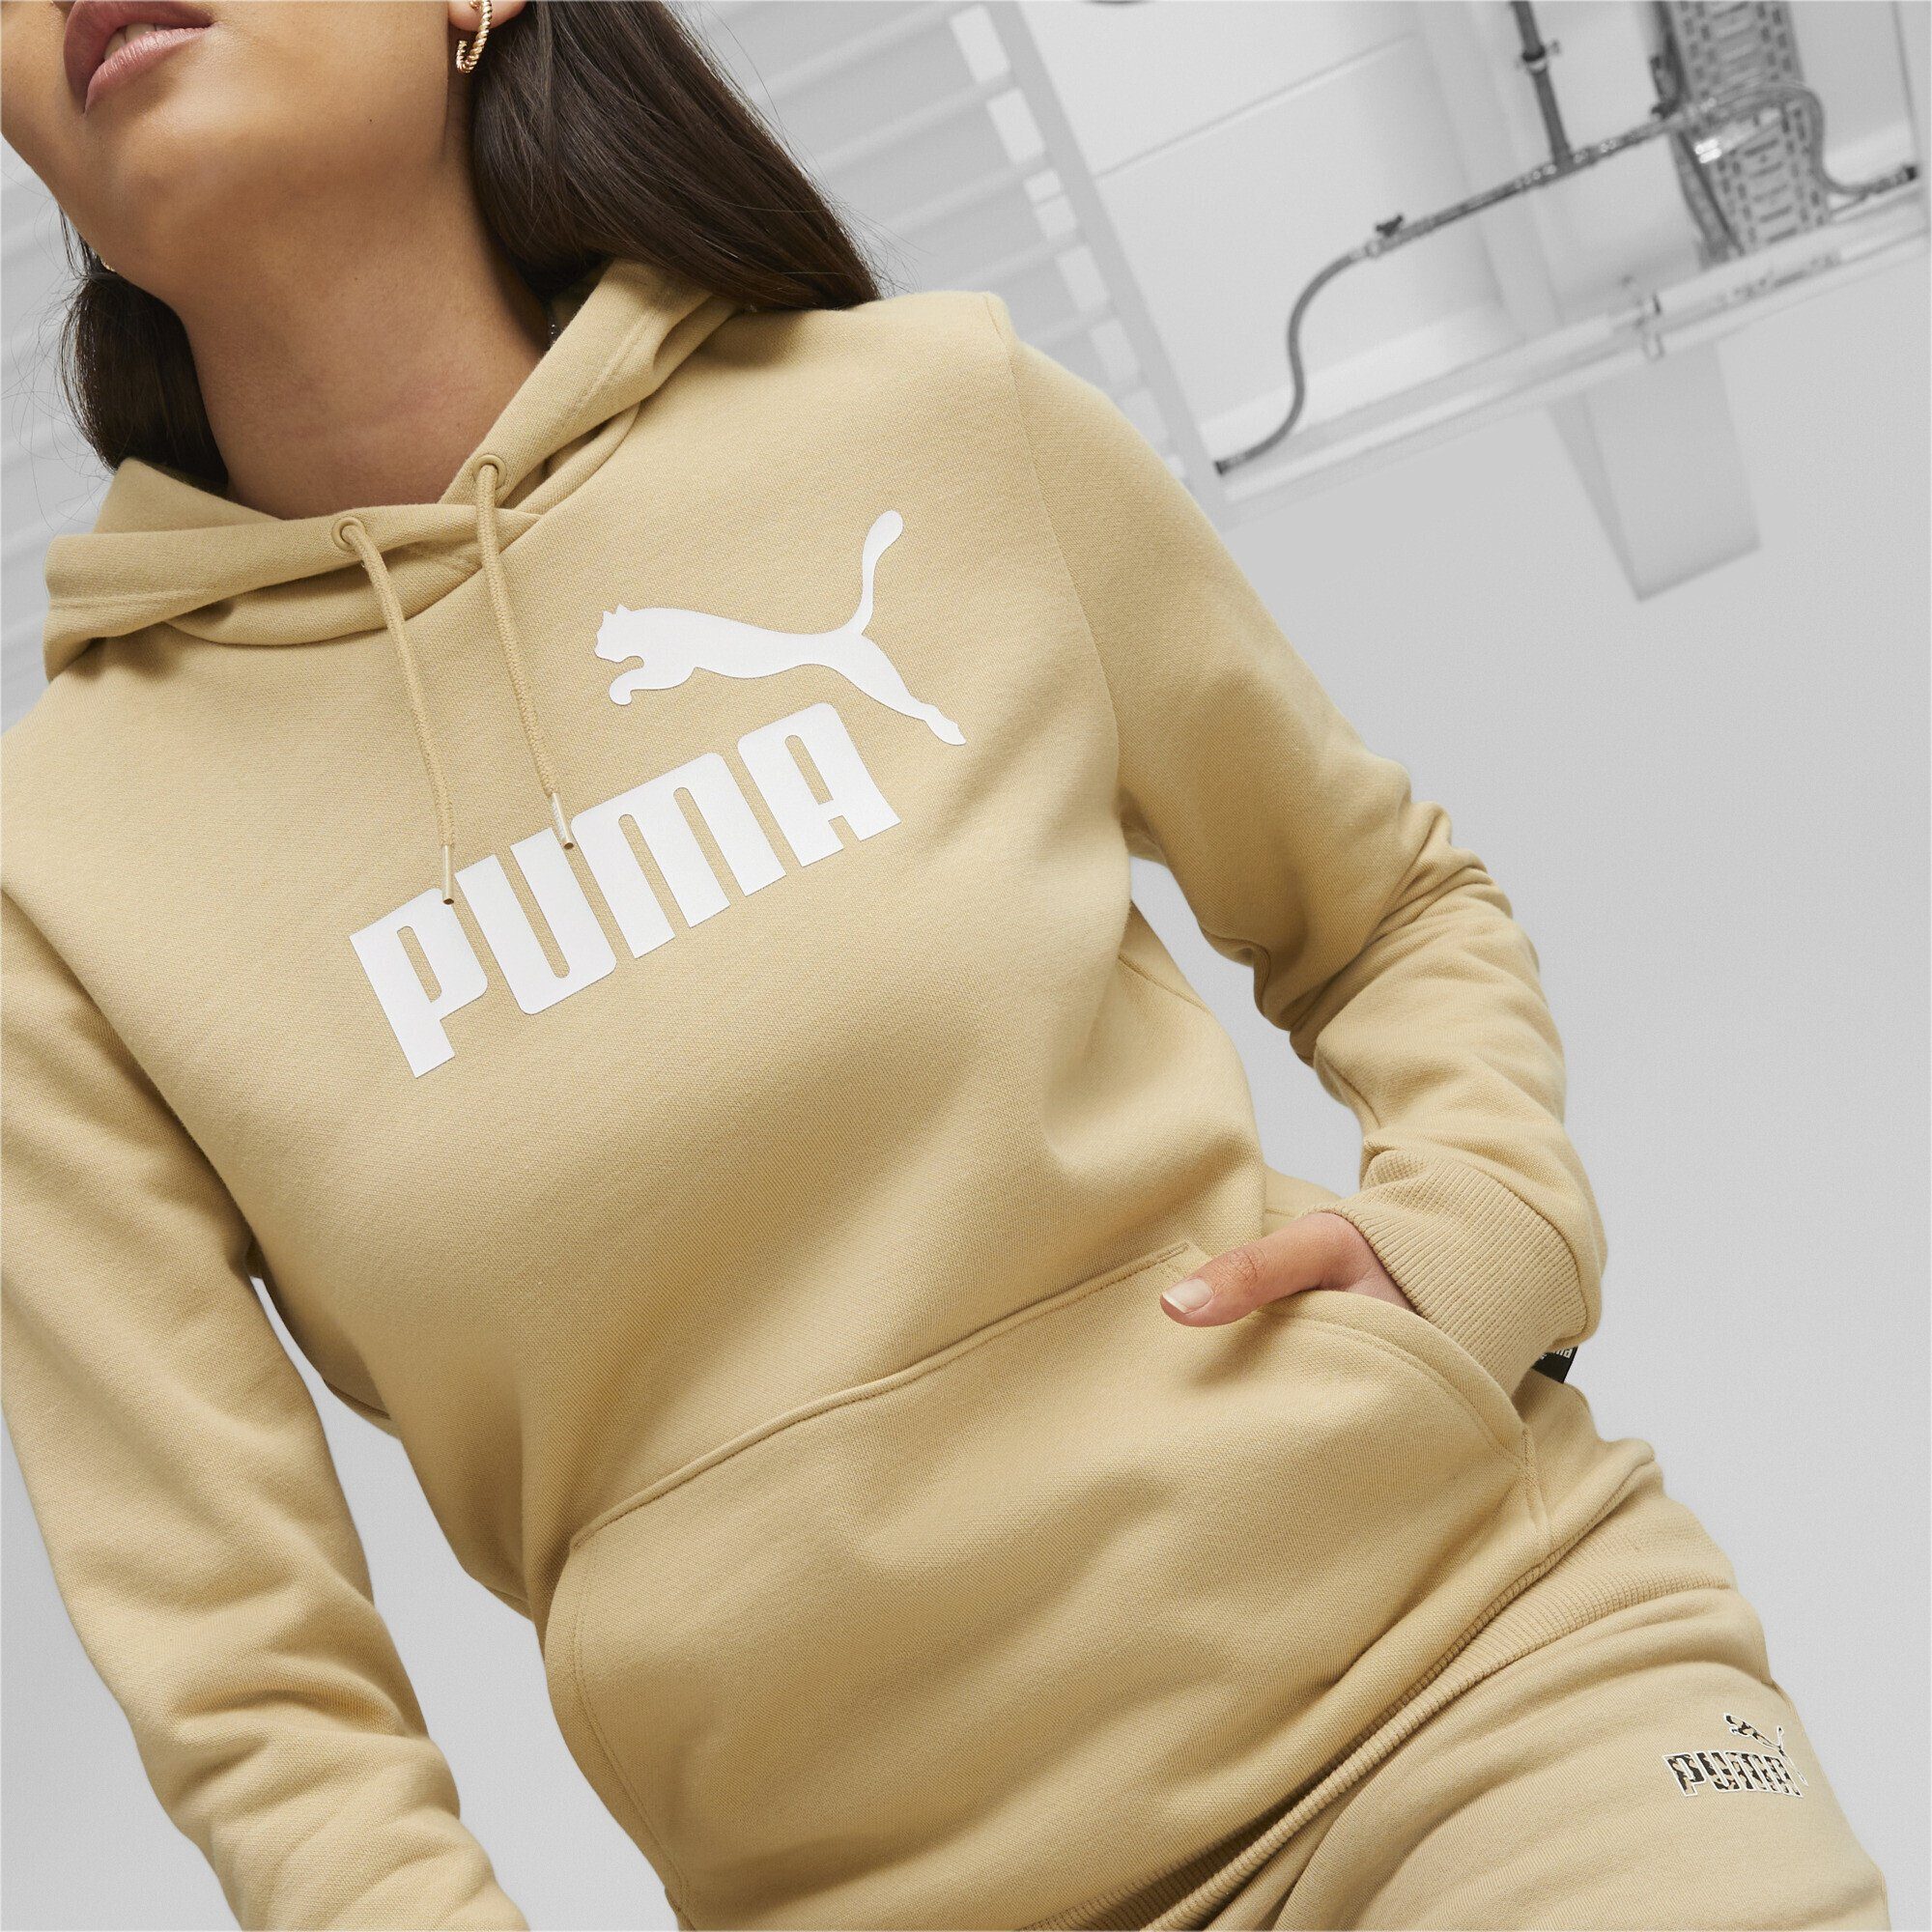 FL Logo PUMA Sweatshirt Damen Sand Beige hoodie Dune Essentials